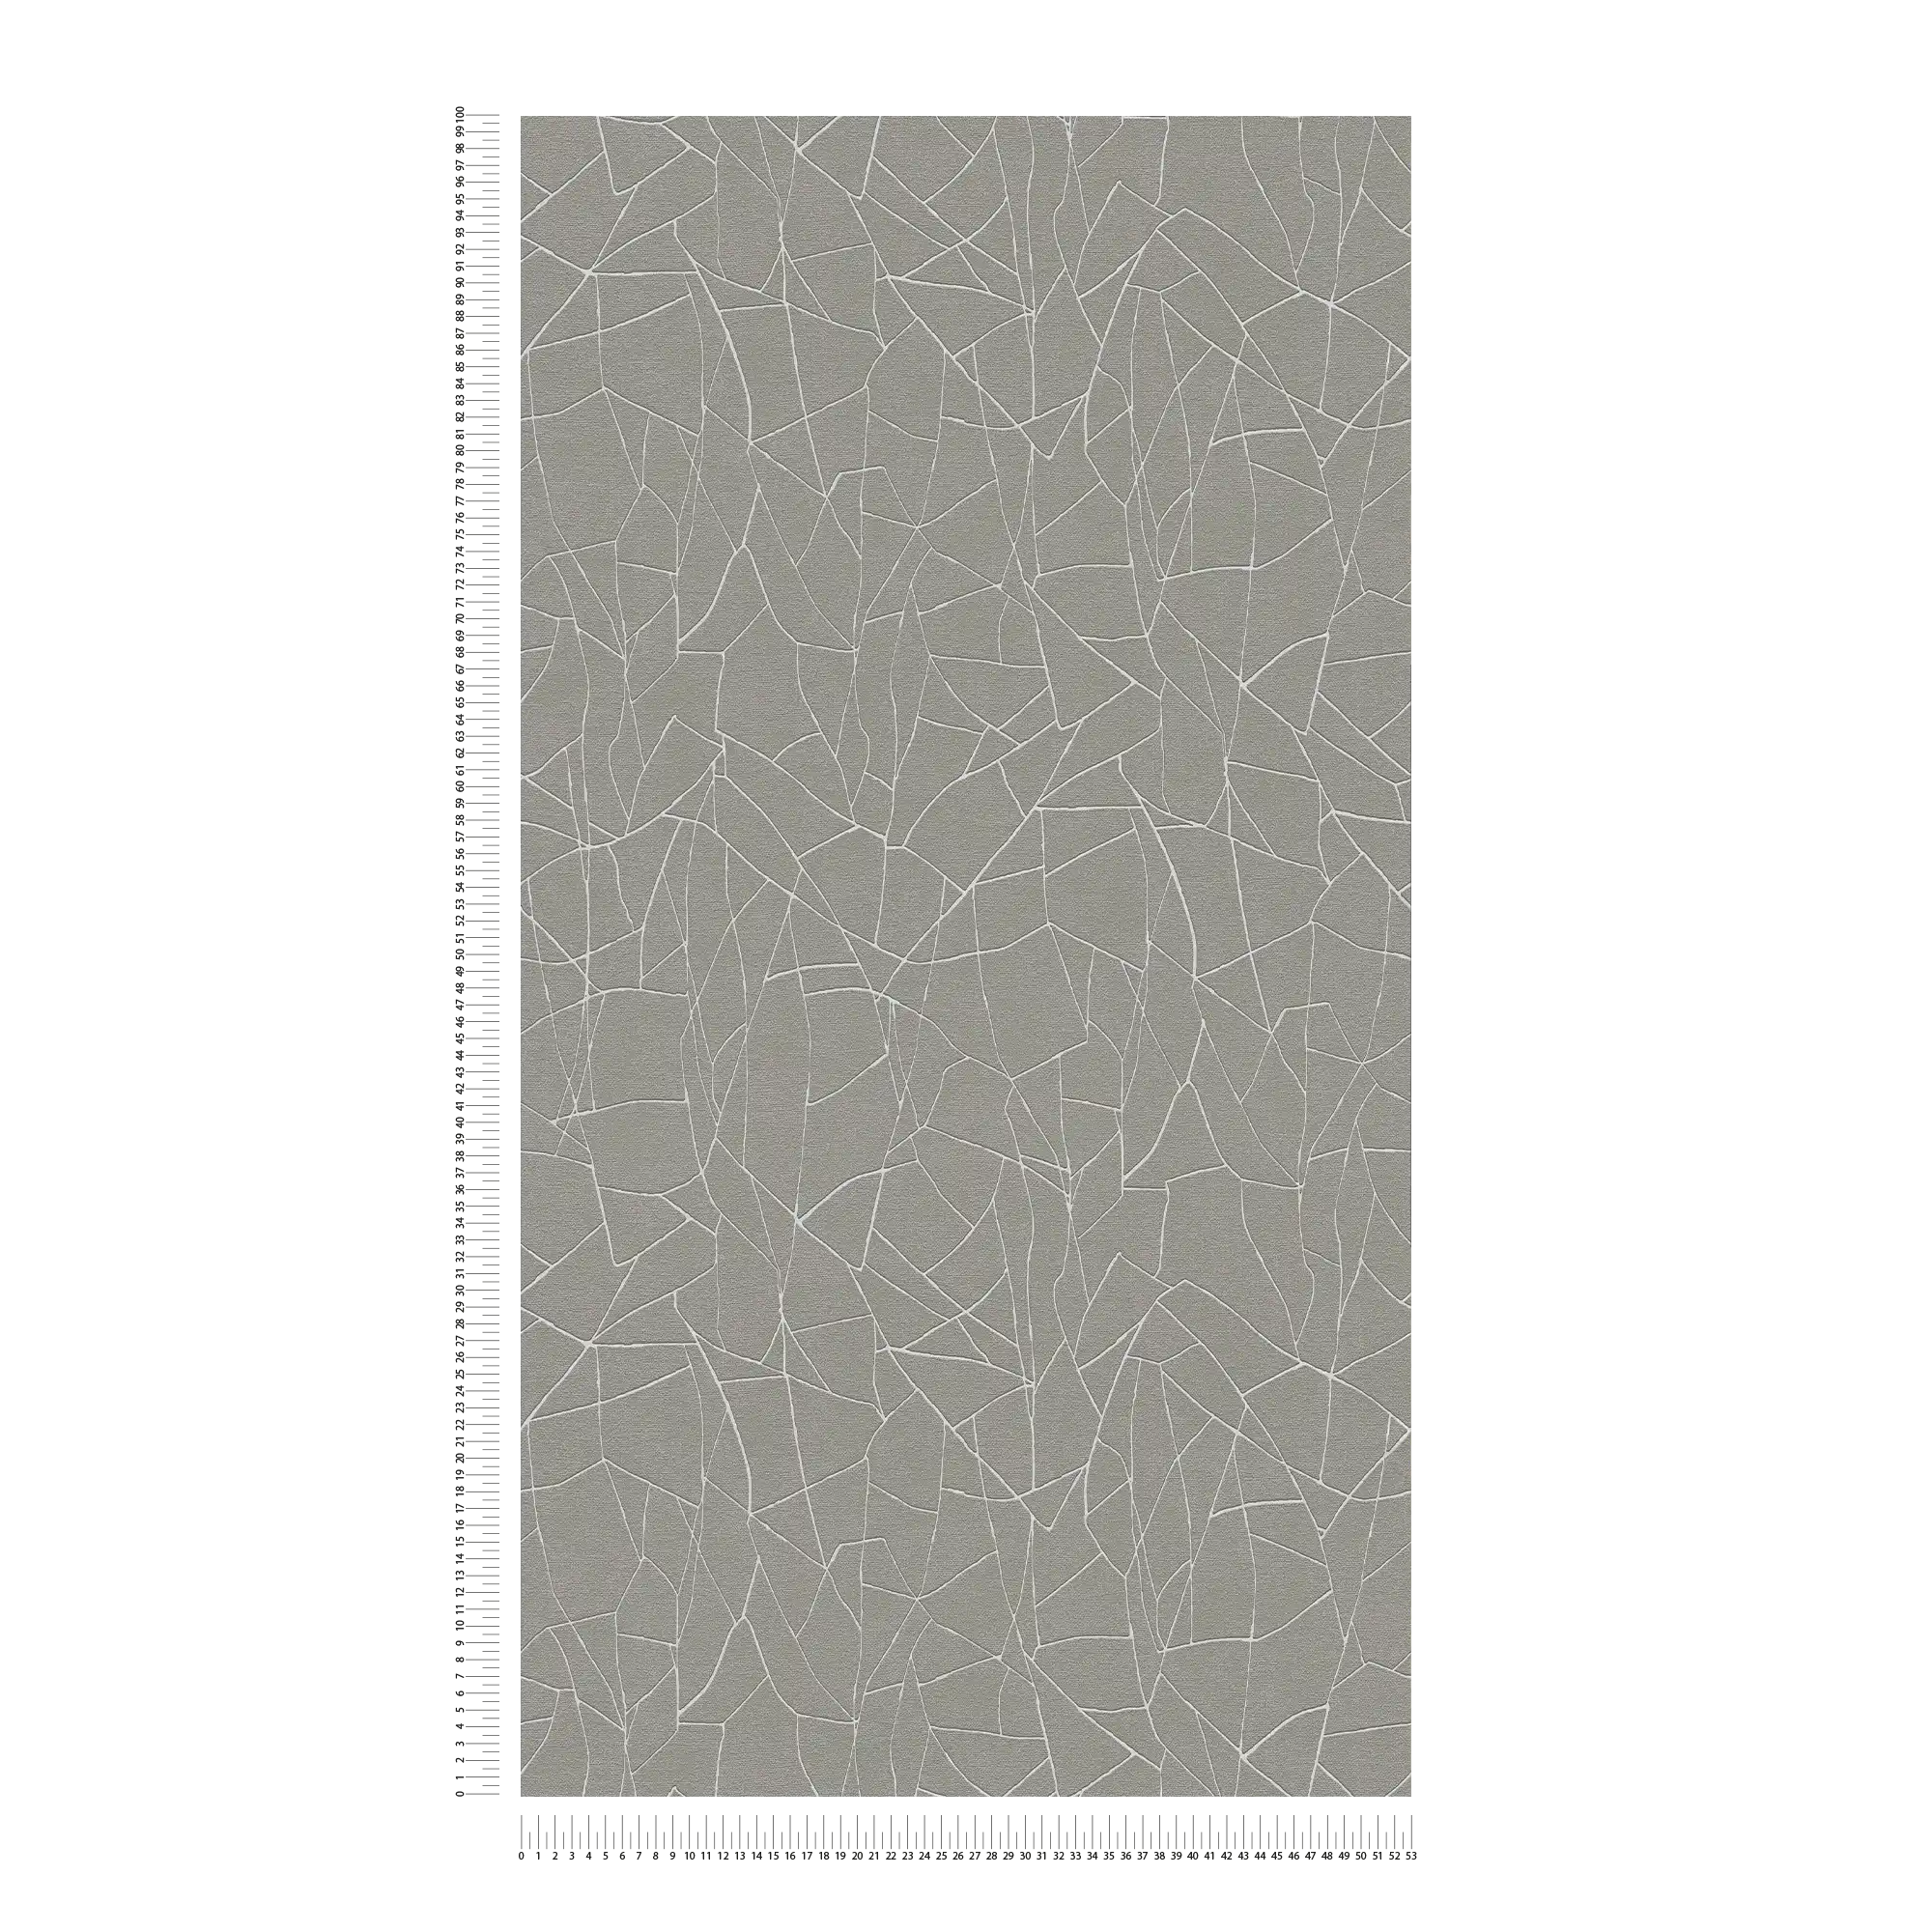             Papel pintado tejido-no tejido 3D con motivos naturales - gris, blanco
        